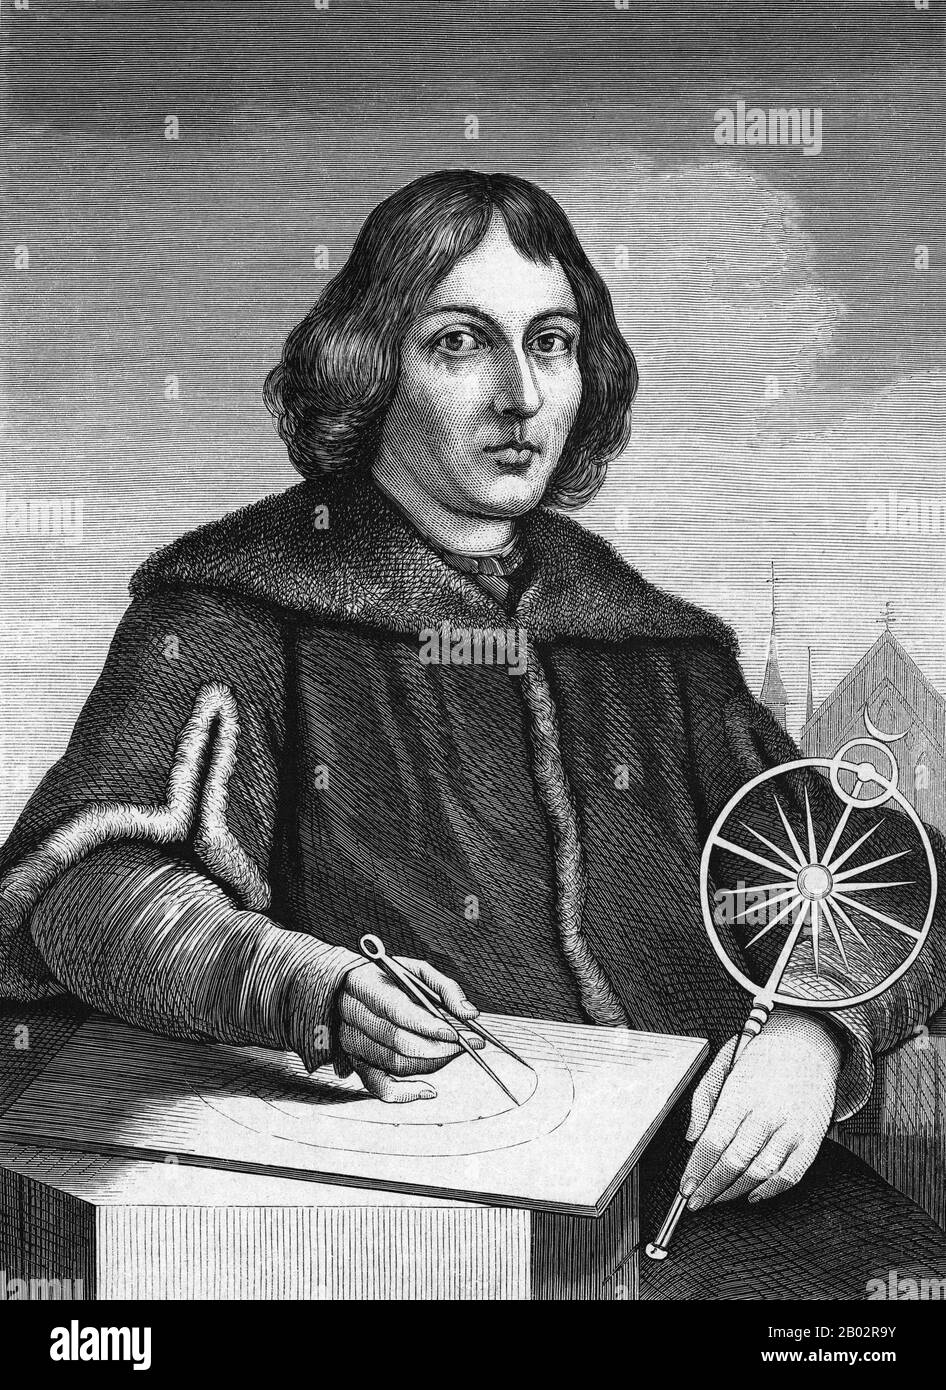 Nicolaus Copernicus (deutsch: Nikolaus Kopernikus; 19. Februar 1473 - 24. Mai 1543) war ein Renaissance-Mathematikhistoriker und Astronom, der ein Modell des Universums formulierte, das die Sonne statt die Erde in ihr Zentrum stellte. Die Veröffentlichung dieses Modells in seinem Buch De revolutionibus orbium coelestium (Über die Revolution der Himmelssphären) kurz vor seinem Tod 1543 gilt als ein großes Ereignis in der Wissenschaftsgeschichte, löst die Kopernikanische Revolution aus und leistet einen wichtigen Beitrag zur wissenschaftlichen Revolution. Kopernikus wurde in Königliches Preßburg geboren und starb, einer Region, die Stockfoto